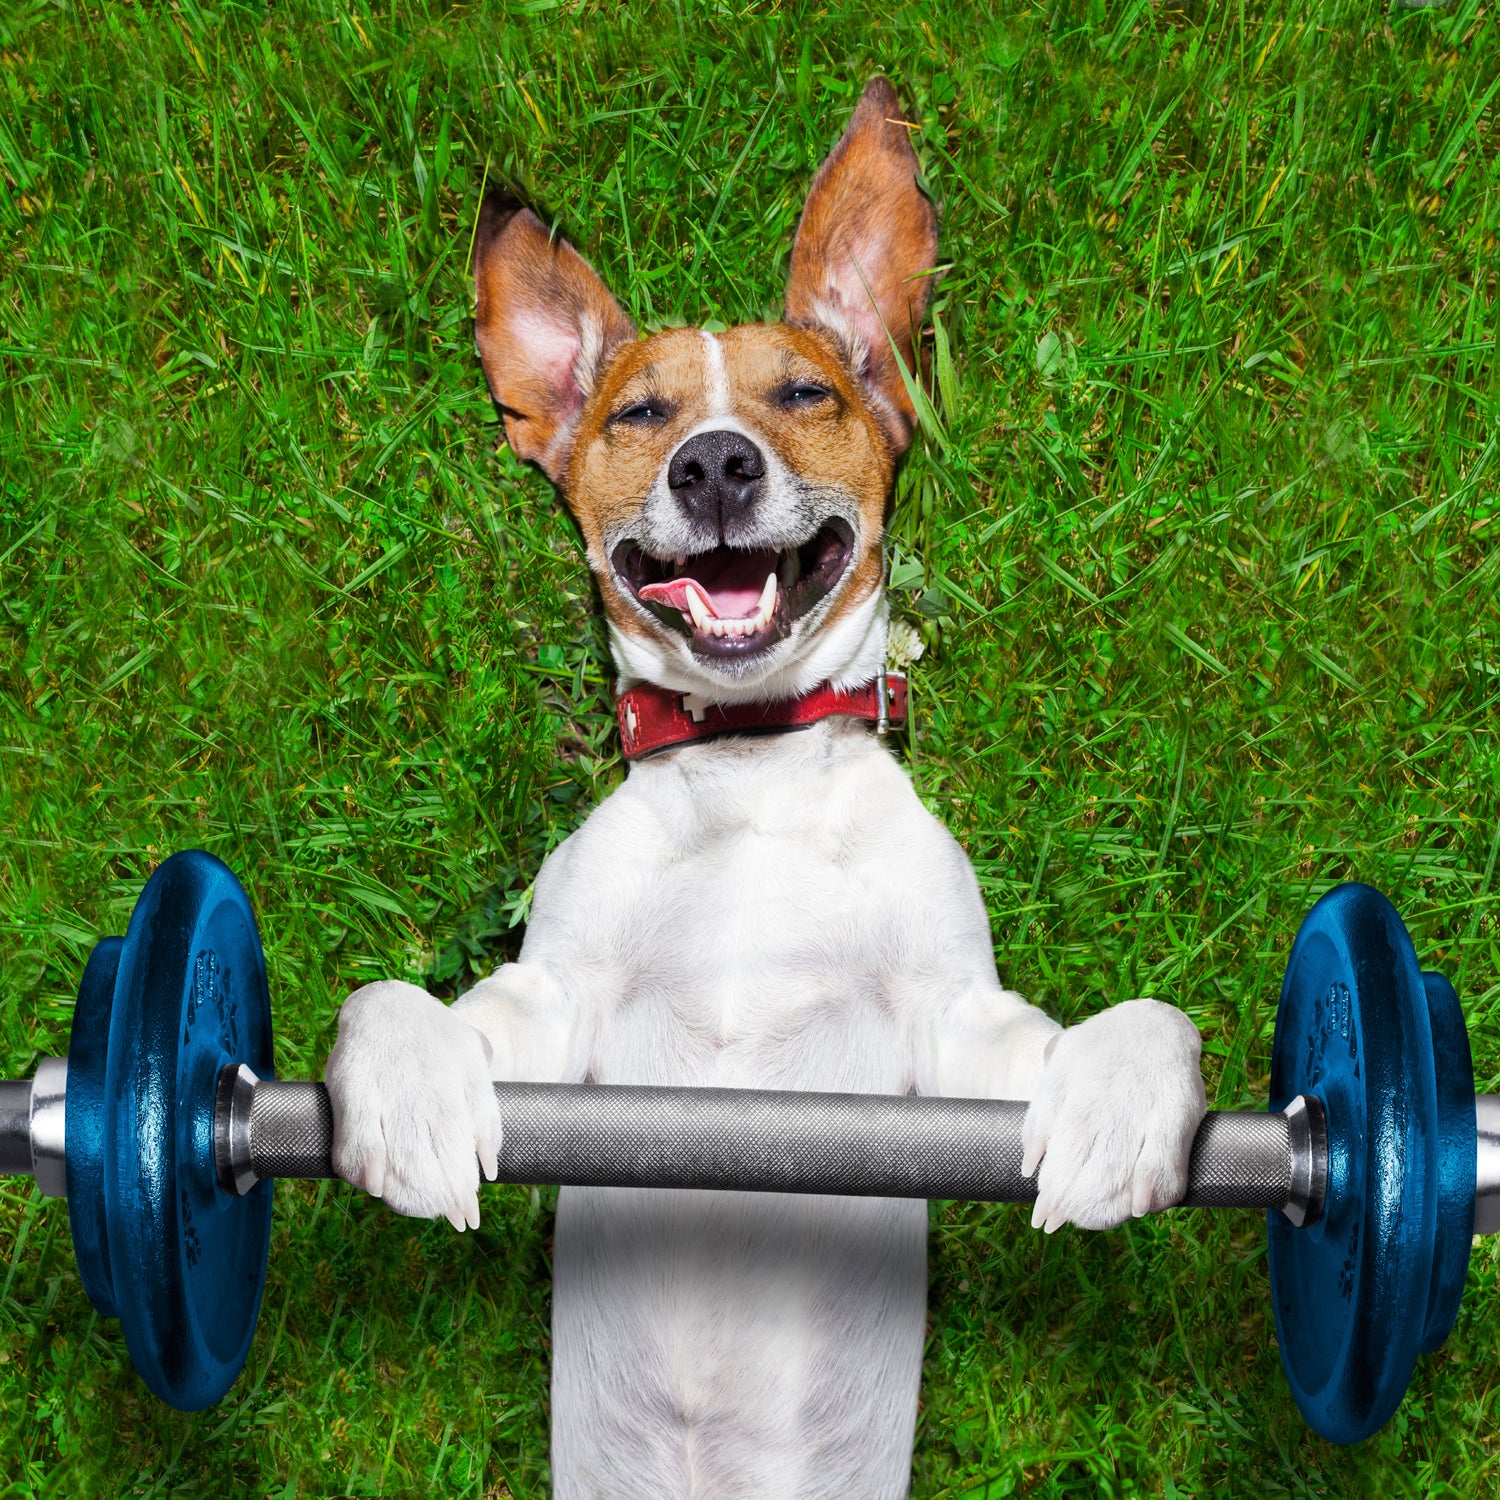 https://cdn.outsideonline.com/wp-content/uploads/2015/06/22/fitness-dog-smiling_s.jpg